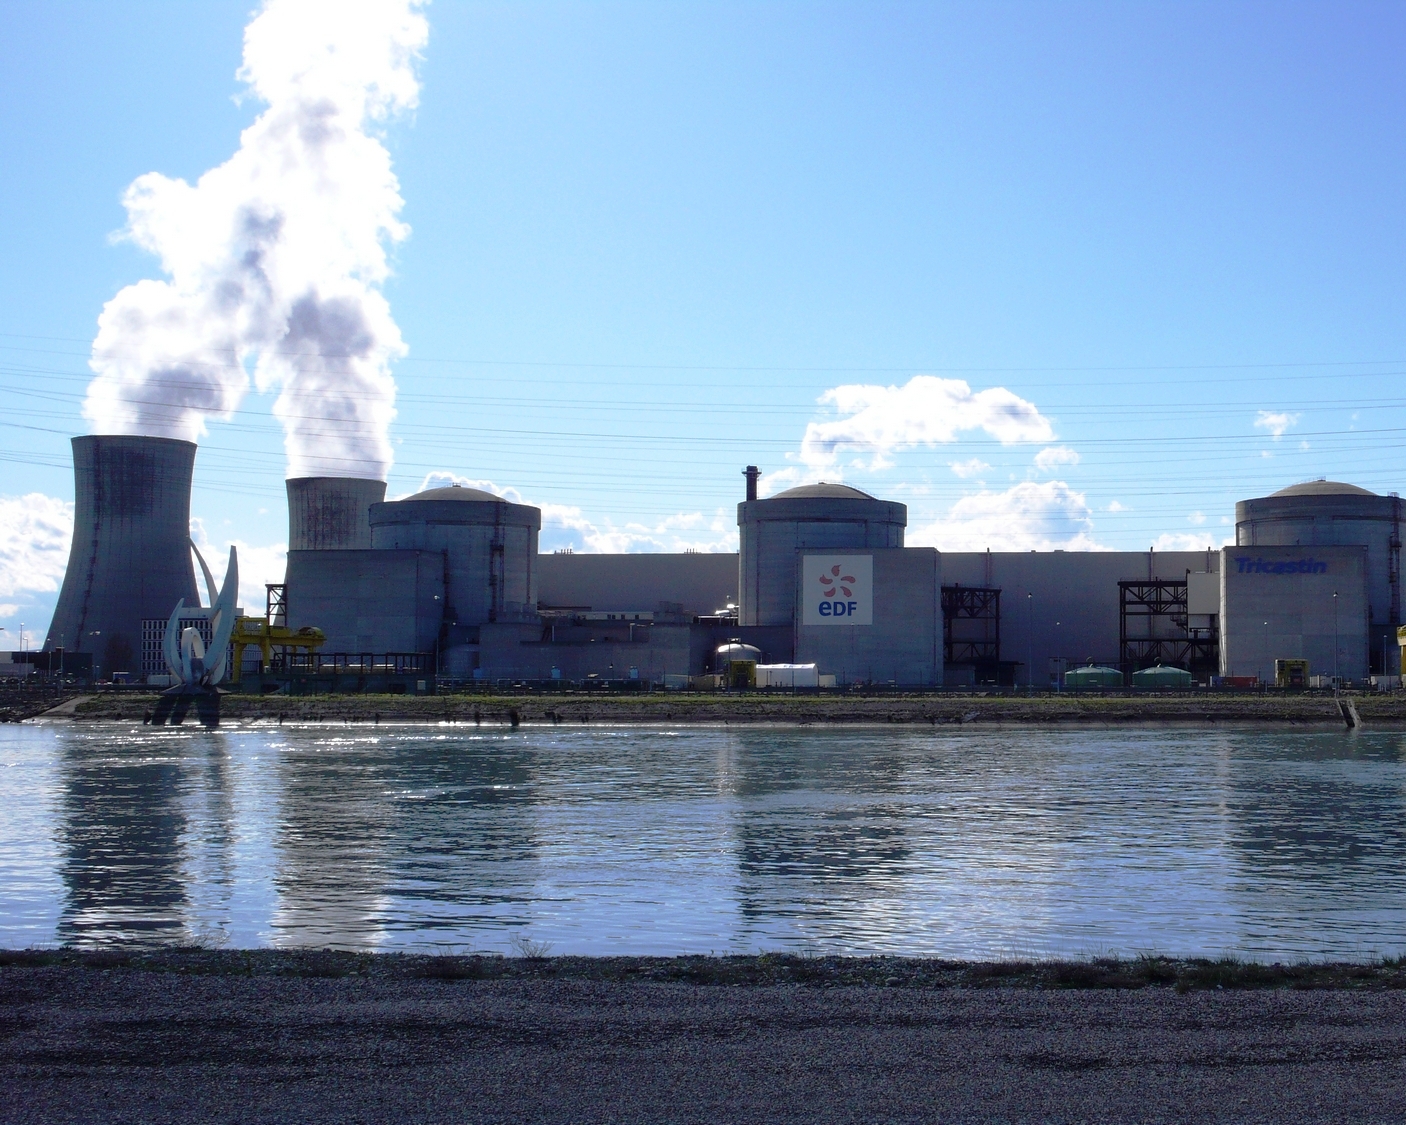 La centrale nucléaire du Tricastin, dans la Drôme, utilise de l'eau pour son fonctionnement. Si cette dernière venait à manquer, cela impacterait donc sa production d'électricité. © Sancio83, DP